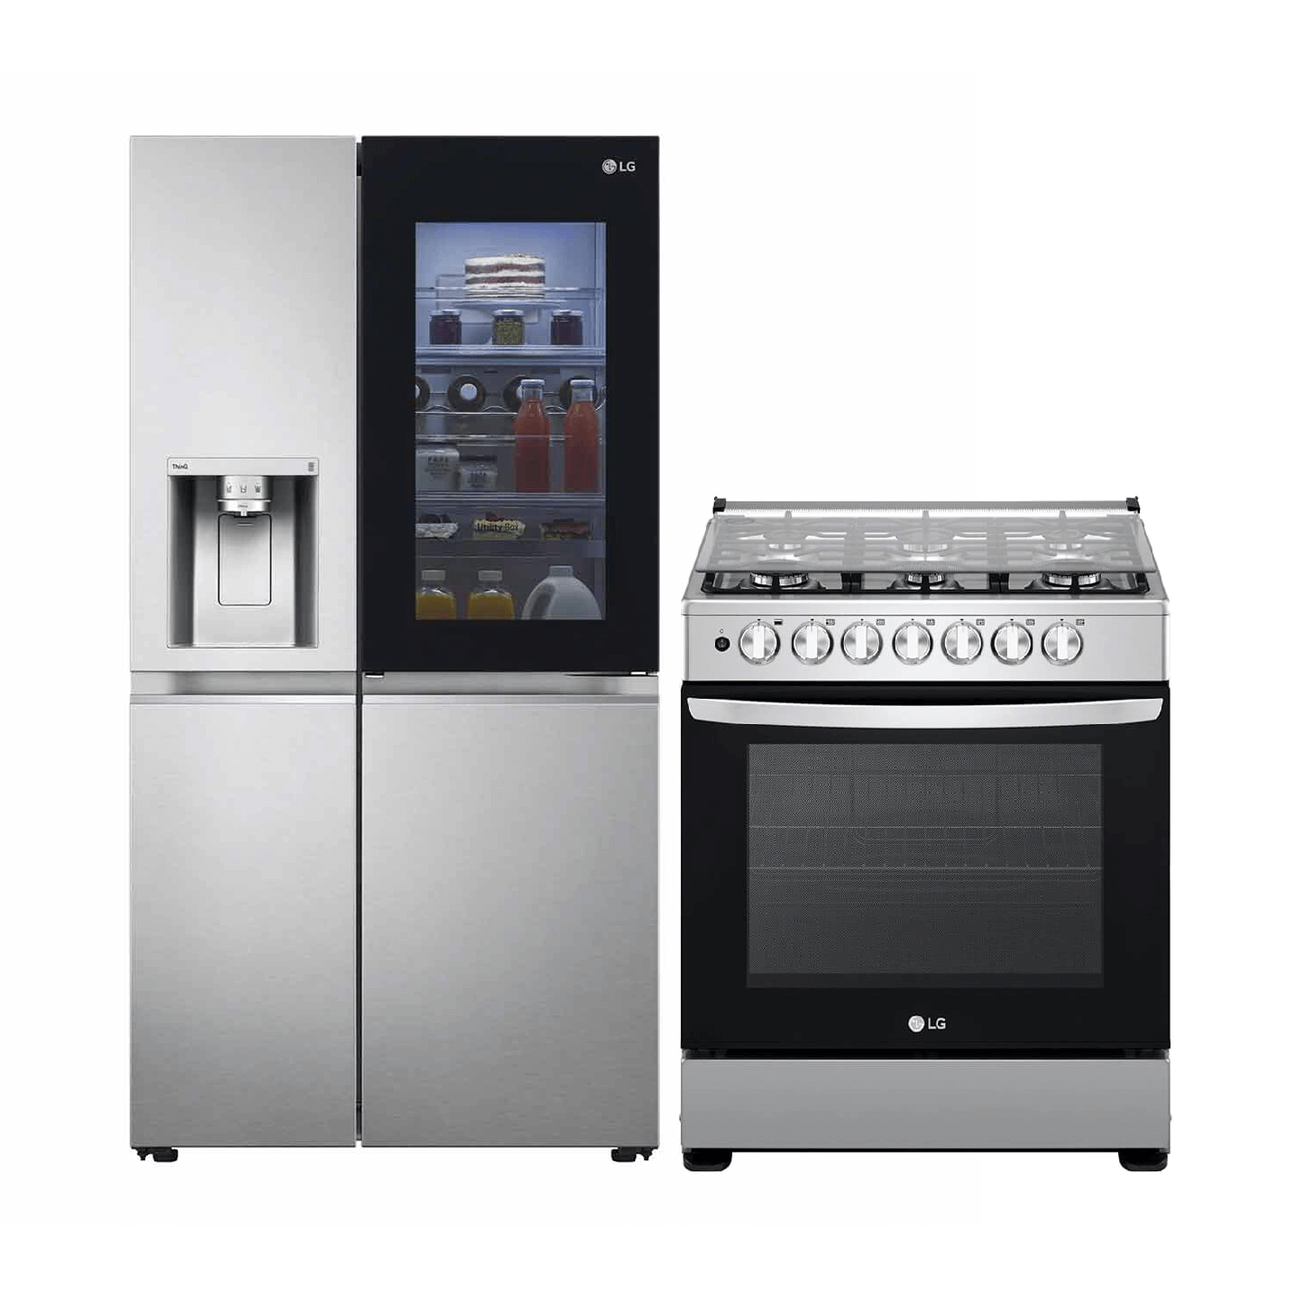 Samsung, Refrigeradora 22Cu.Ft., Bruto Side X Side, Dispensador Agua, Hielo Inverter, Gris